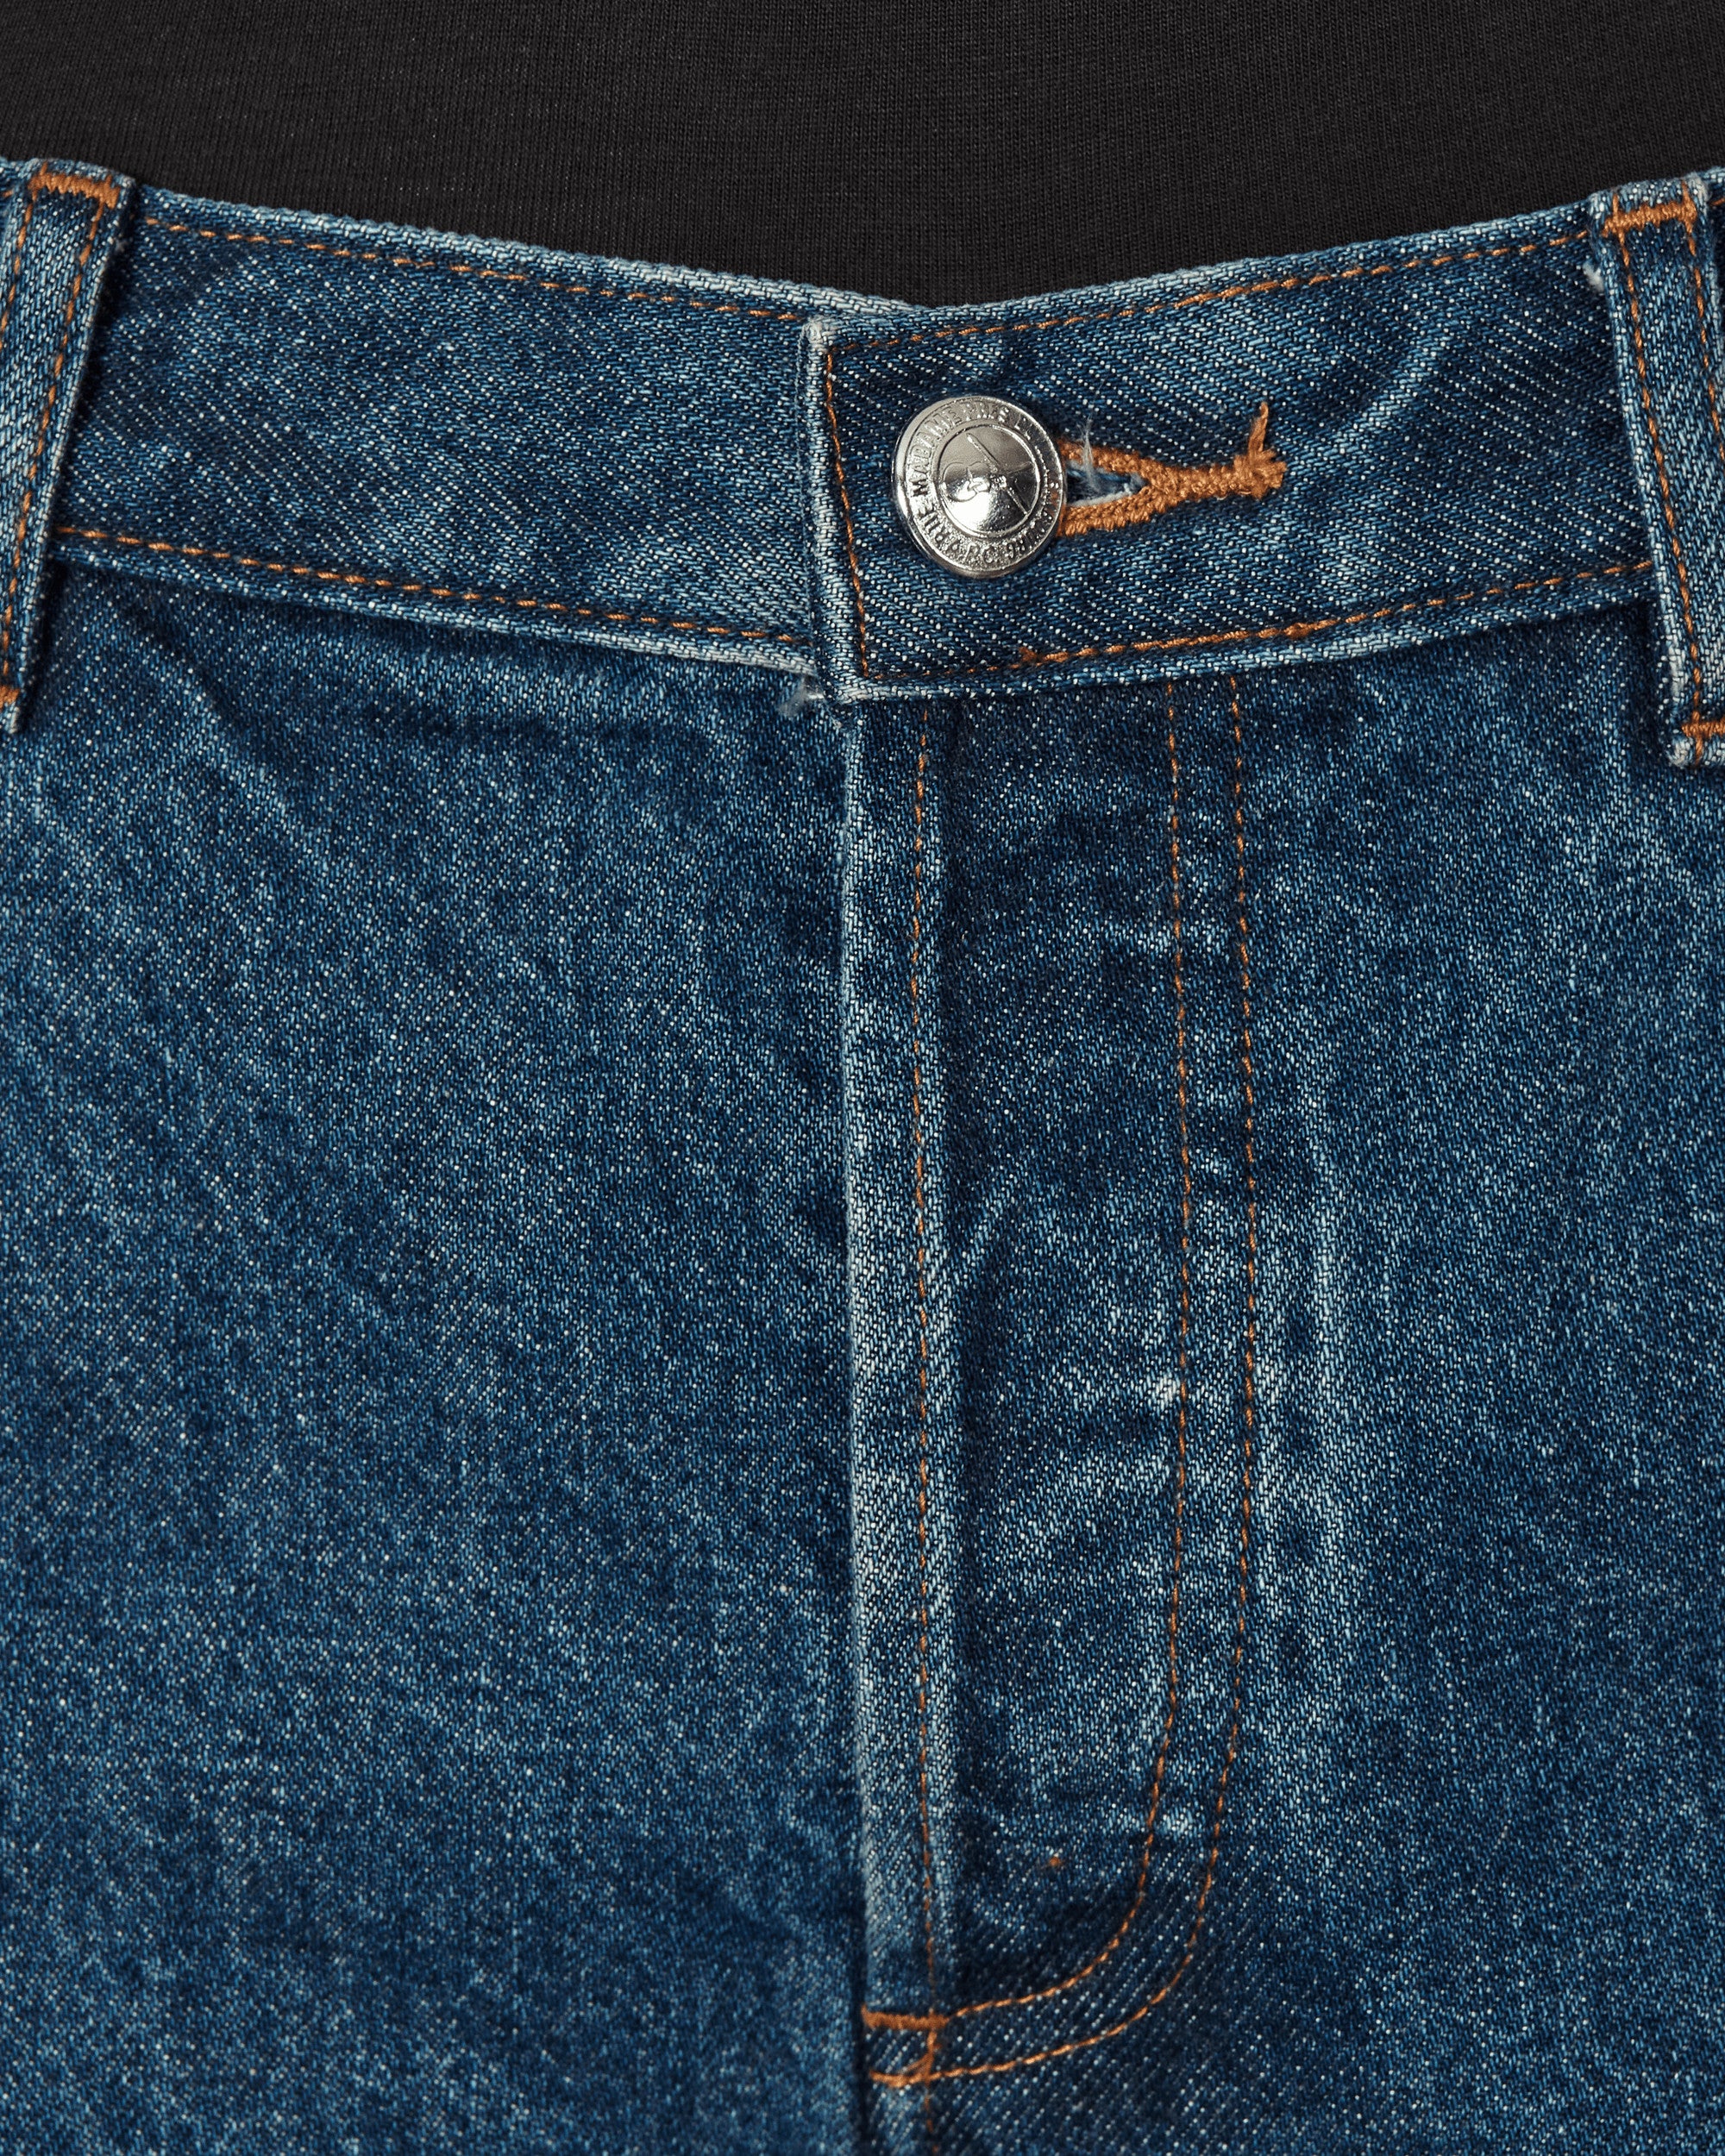 orochi jeans オロチジーンズ 未使用 再入手困難 デッドストック - デニム